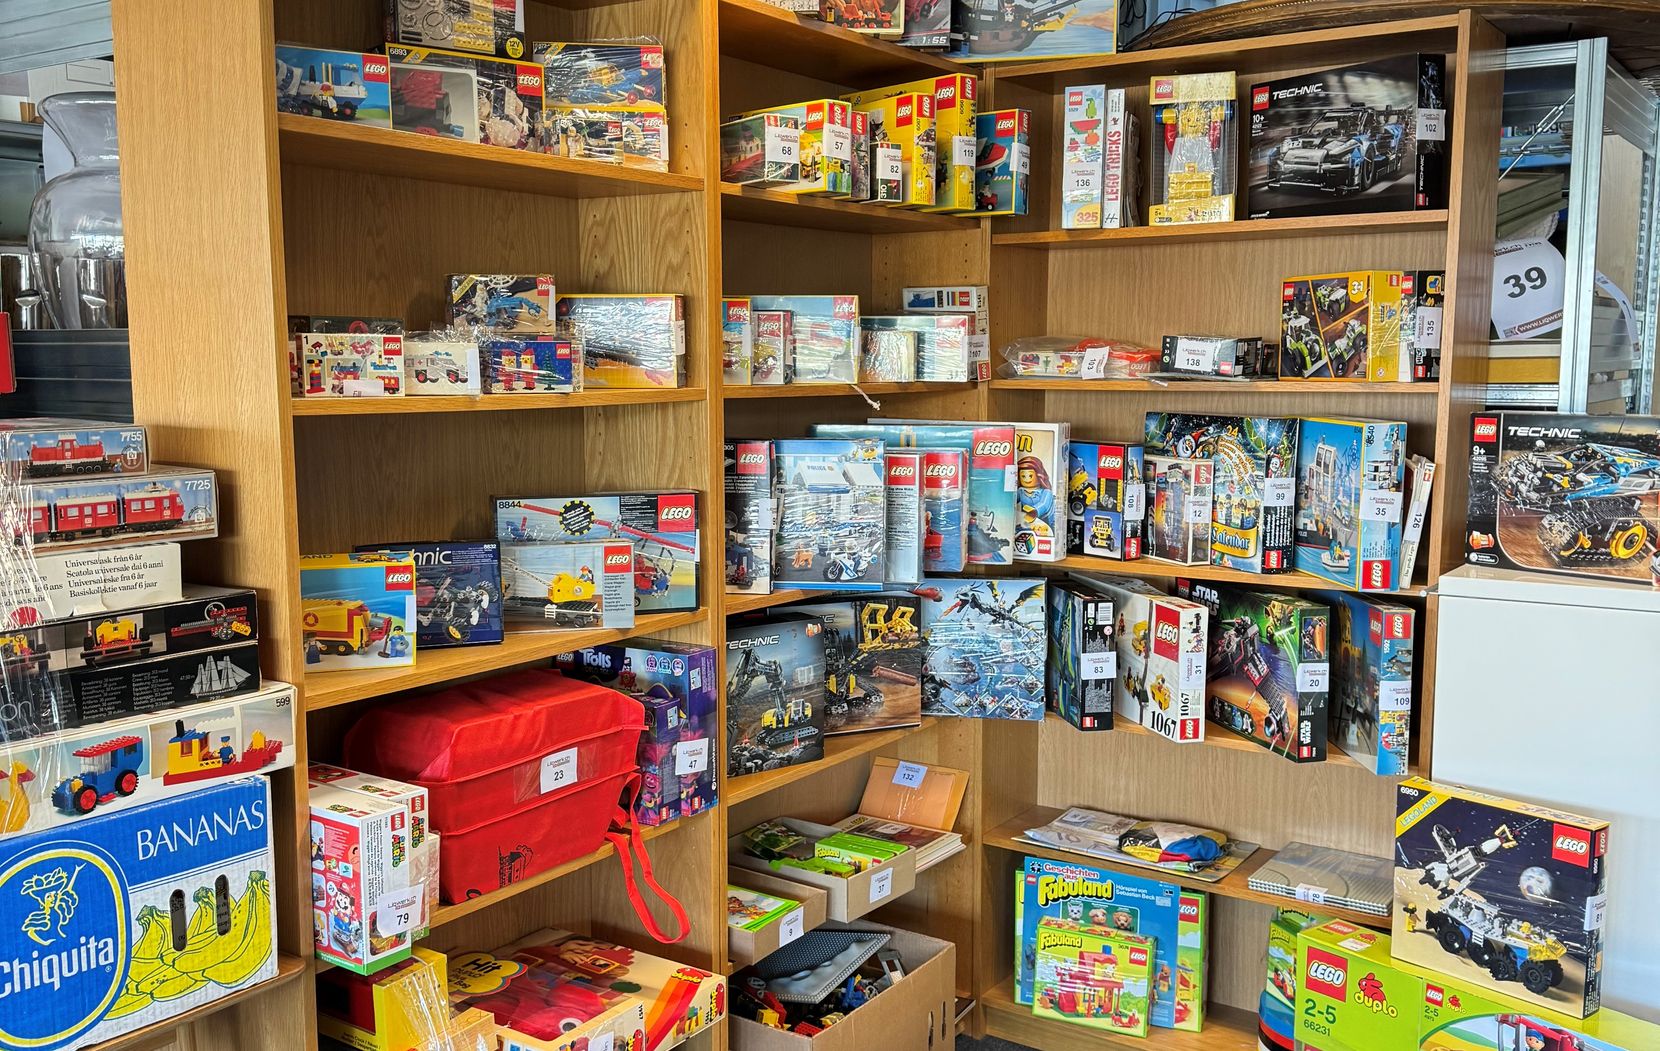 Auf dem Bild sind diverse Lego-Sets in einem Regal zu sehen.